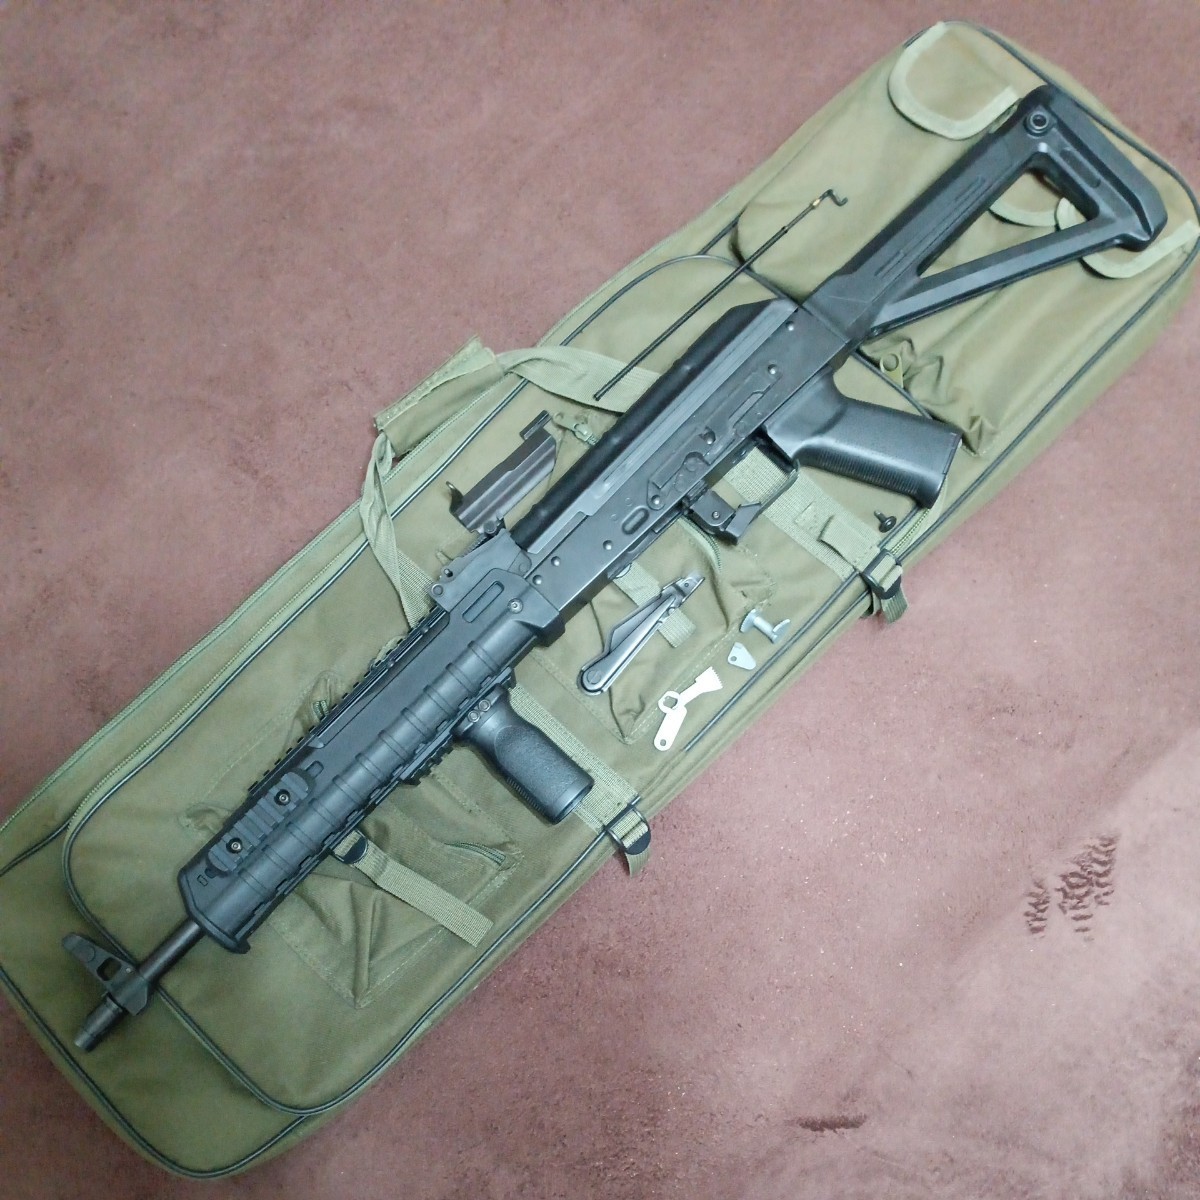 ◆送料当方負担◆ LCT レシーバー AKM ベース Magpul / Zhukov 仕様 AK 外装セット ガンケース 付属 マグプル ジューコフ AK74 AK47 AK_画像1